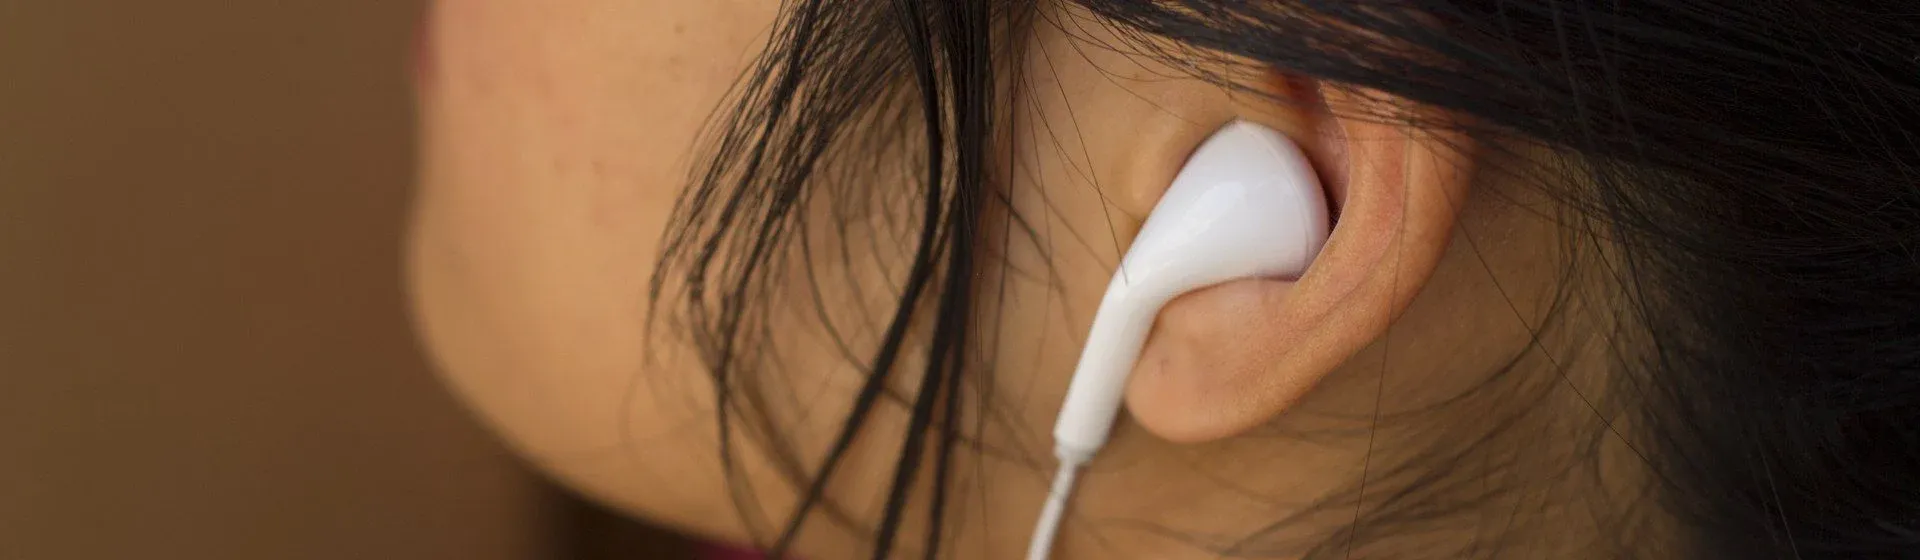 Capa do post: Fone de ouvido barato: as melhores opções para gastar pouco